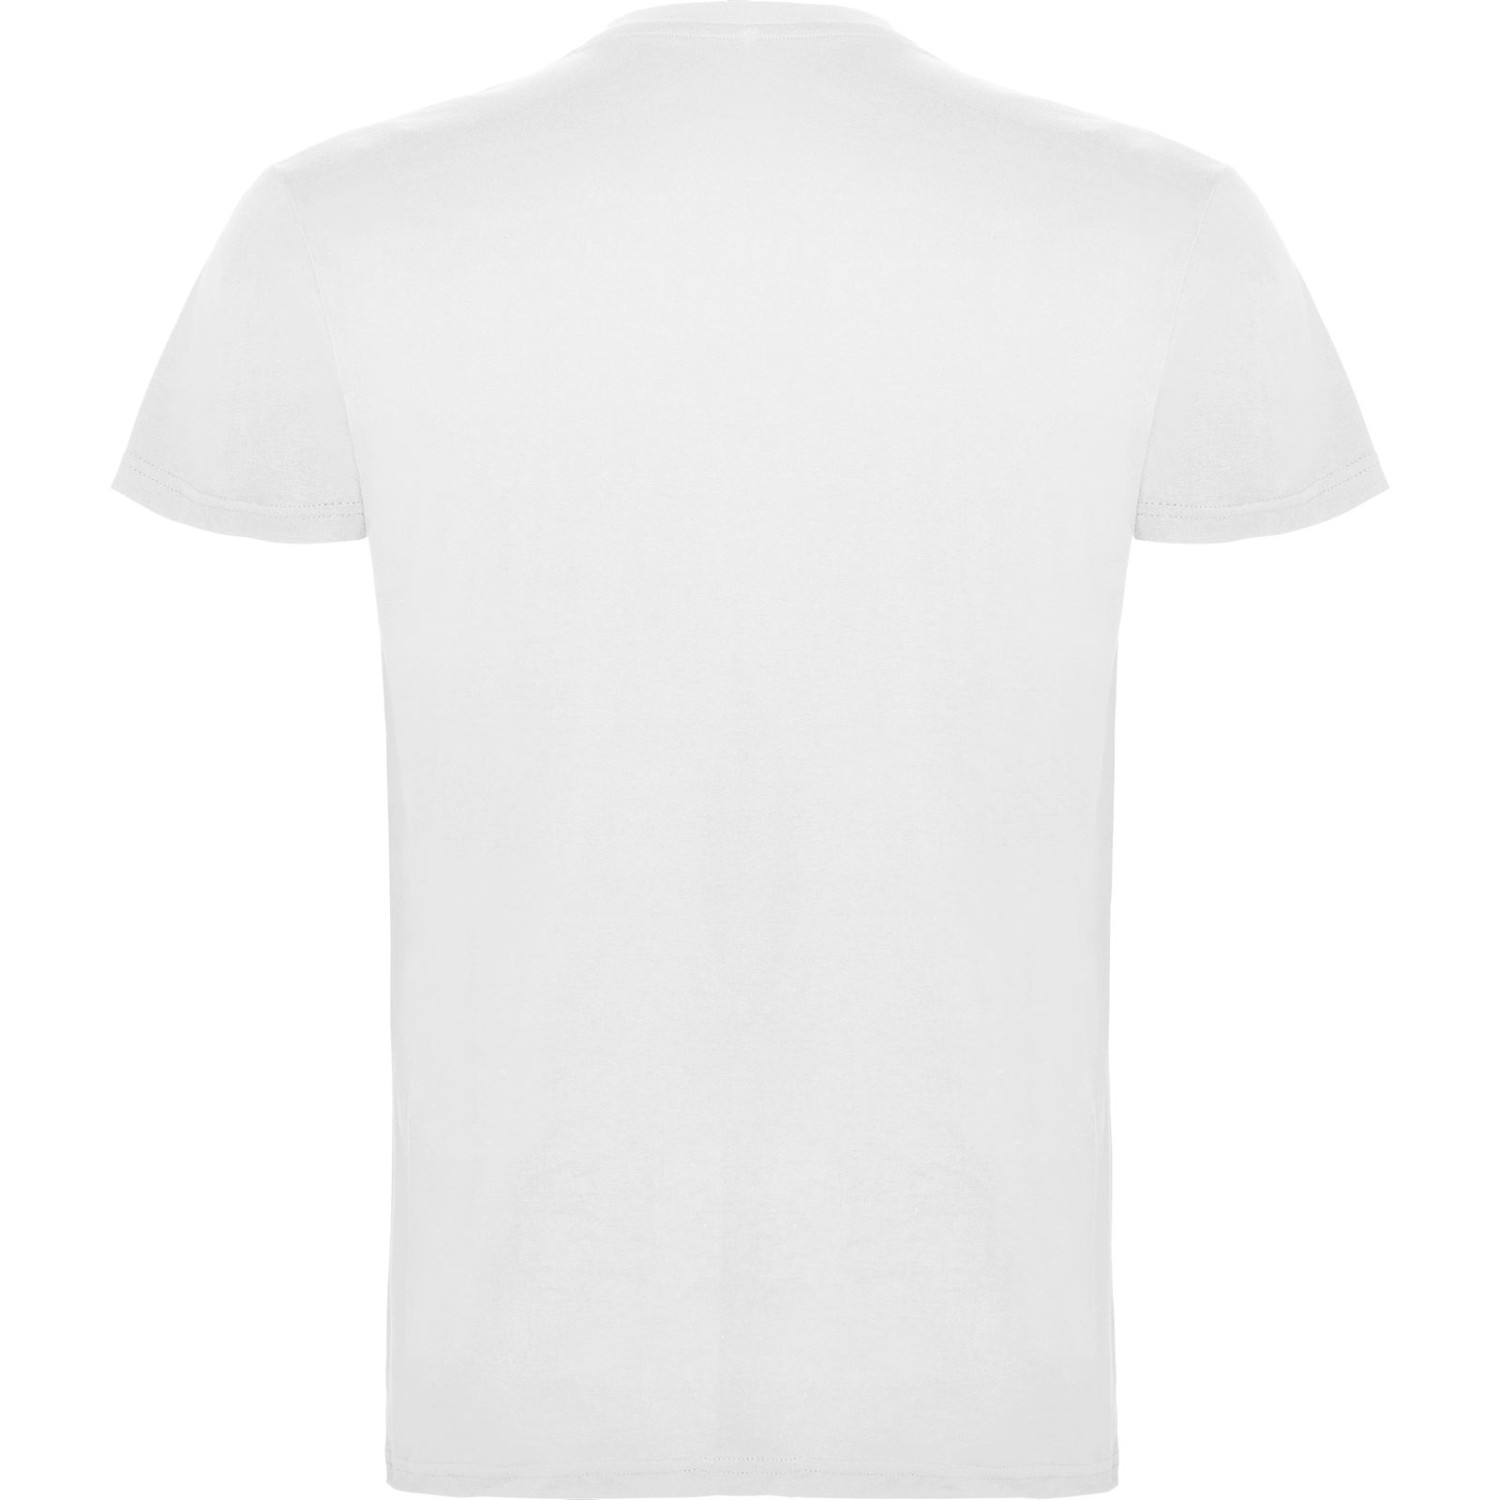 3. Foto T-Shirt BEAGLE Kurzarm Rundhals mit Druck (Farbe: weiß Größe: 3XL)